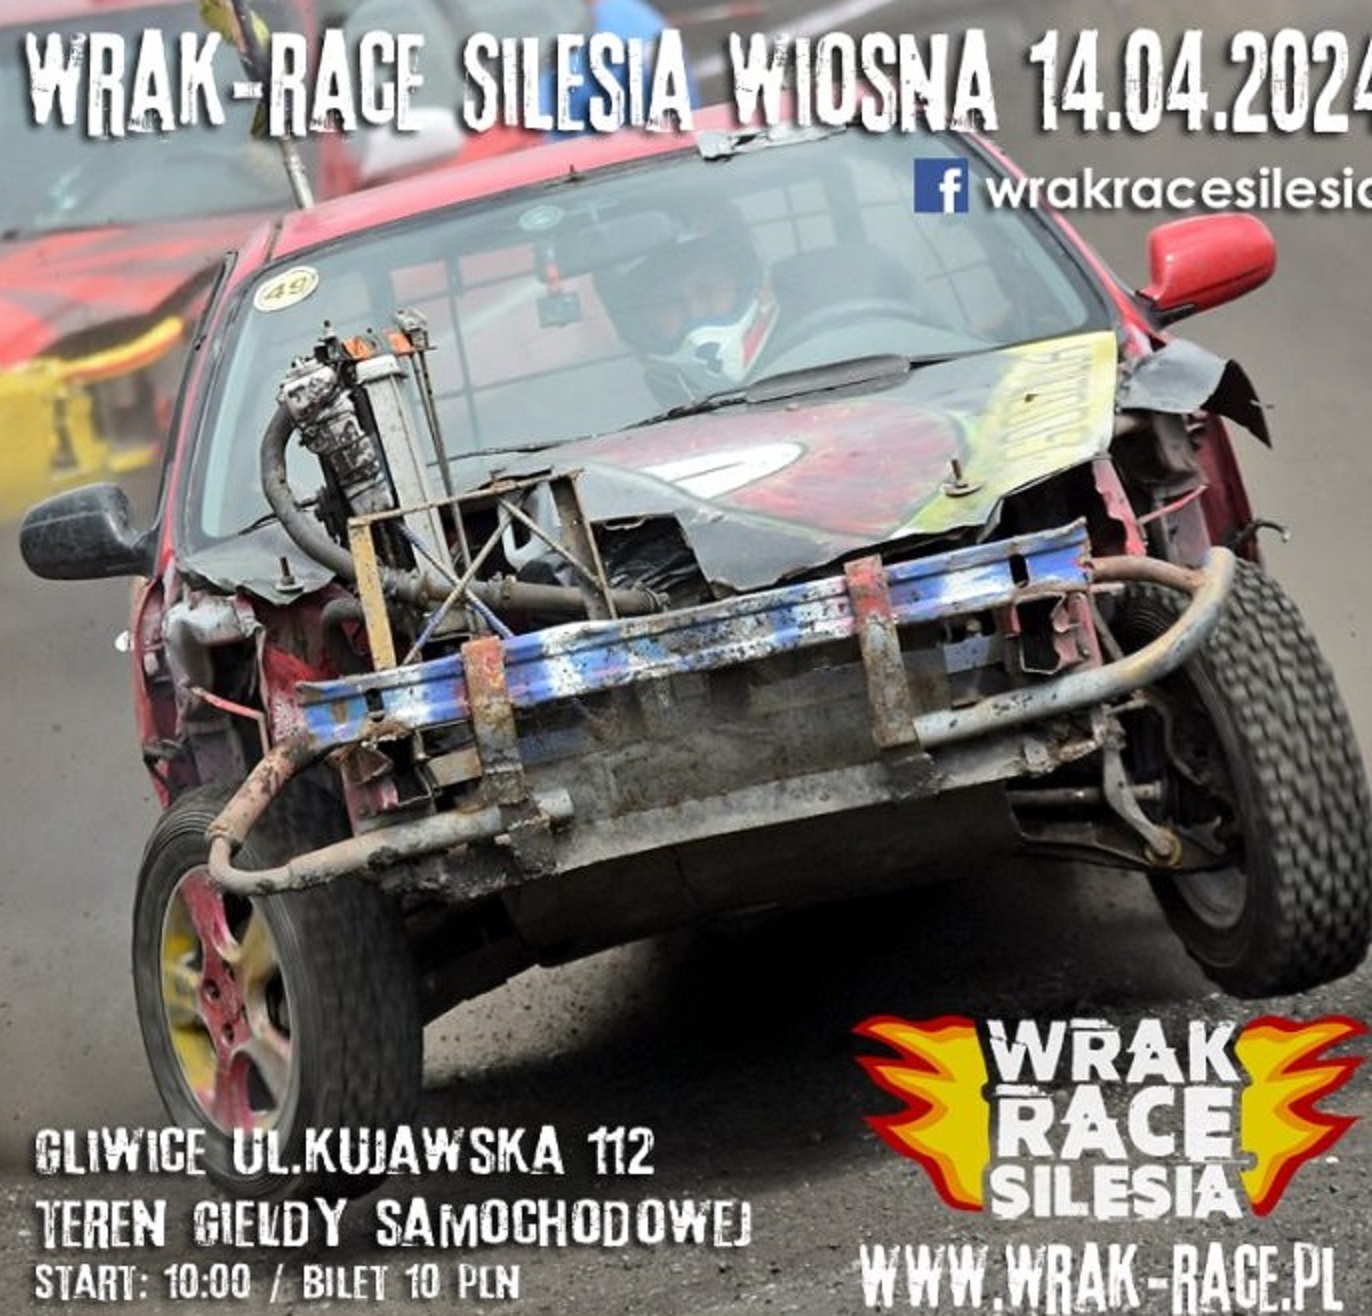 WRAK-RACE Silesia WIOSNA w Gliwicach